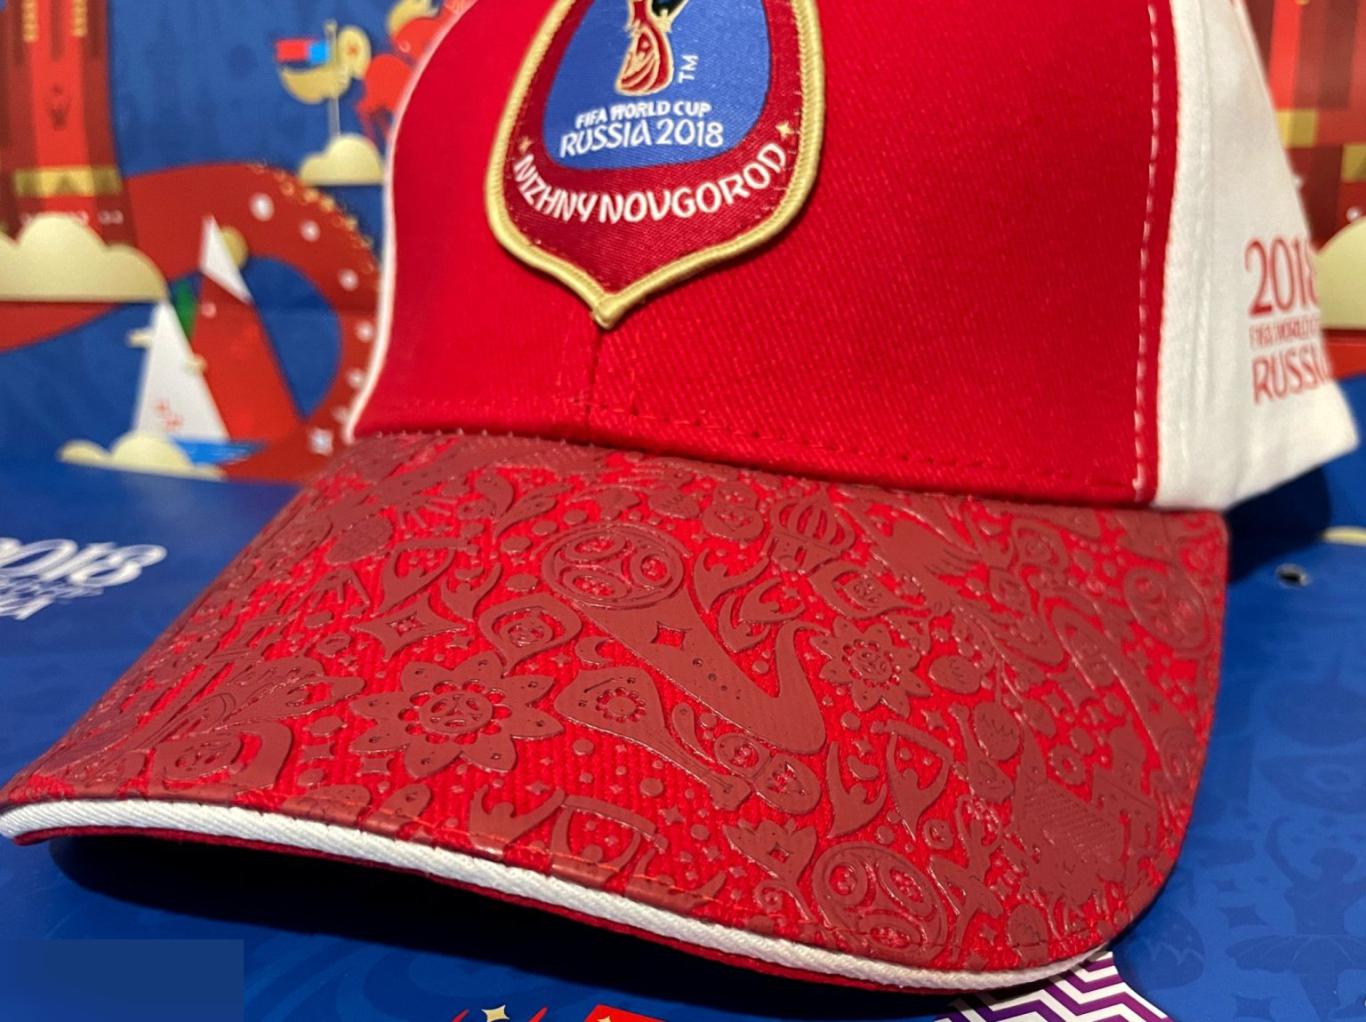 ОПТОВЫЙ ЛОТ! 4 эксклюзивные кепки Организатора Чемпионата мира Fifa 2018 2